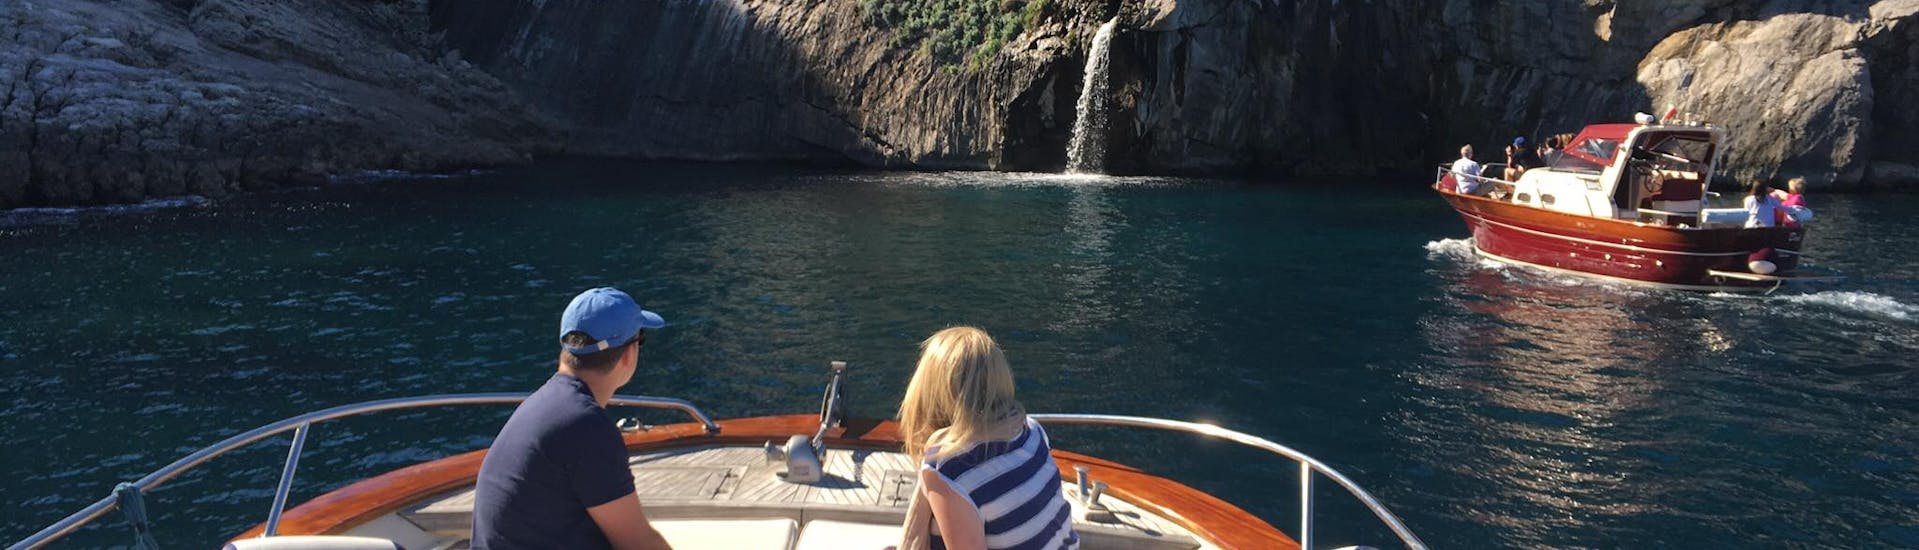 Balade en bateau de Sorrente à Capri et à la Grotte Bleue avec arrêts baignade et snorkeling.